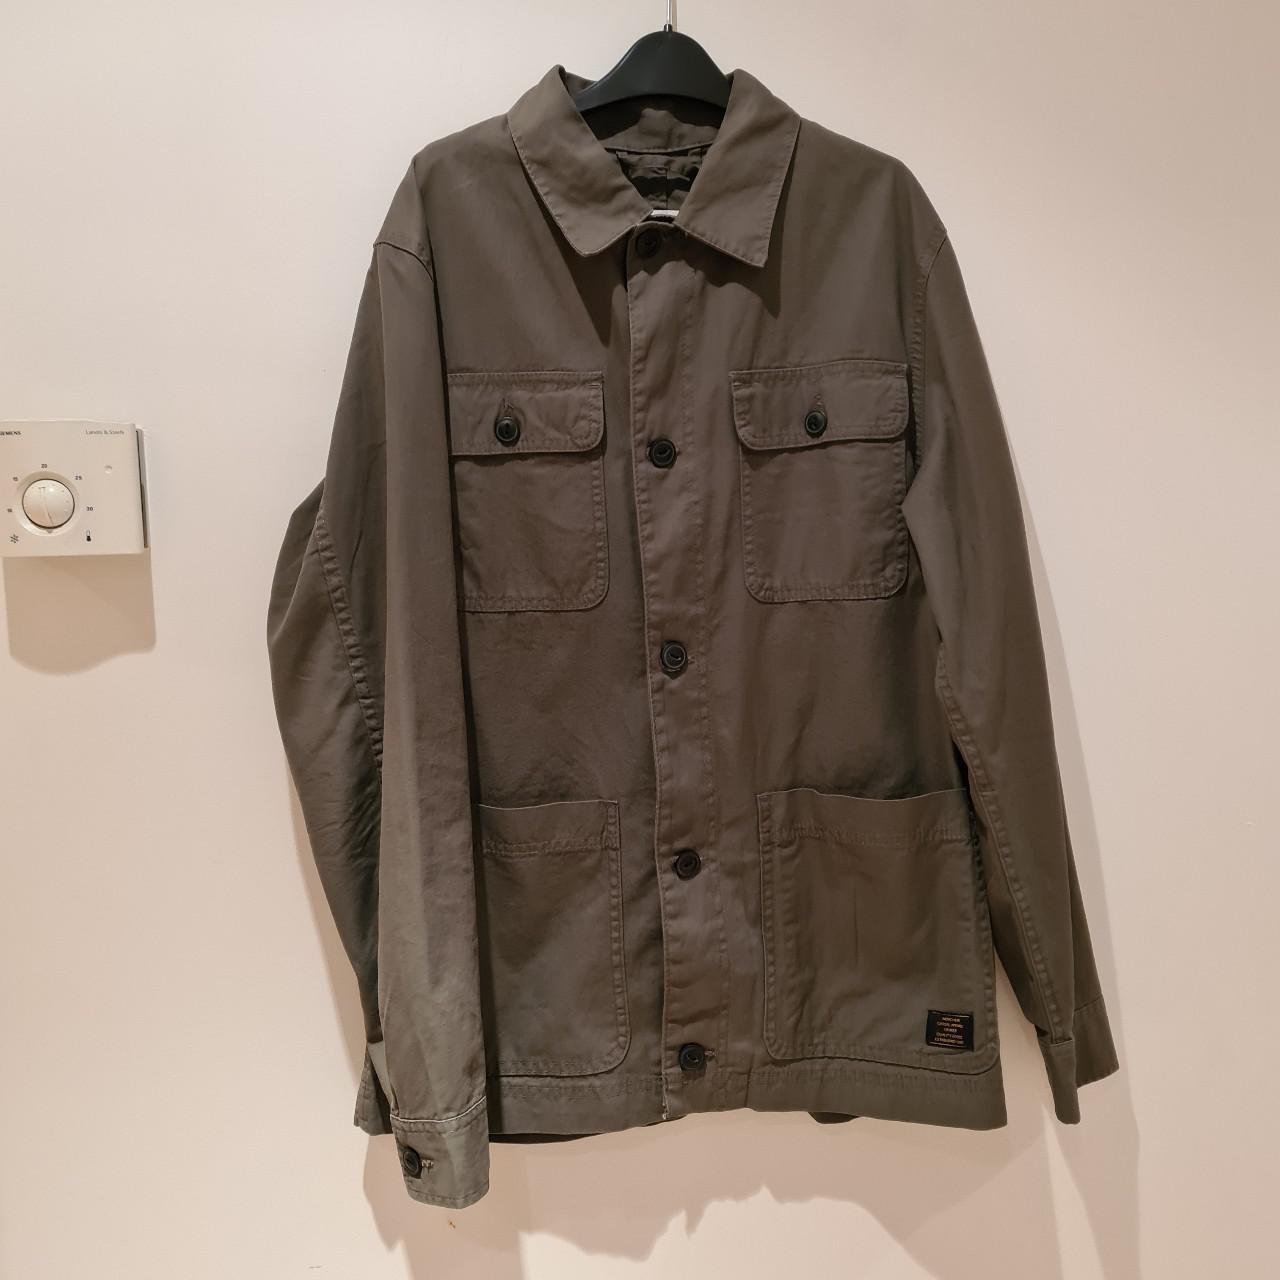 H&M cotton jacket/shirt in olive green. Men’s size... - Depop